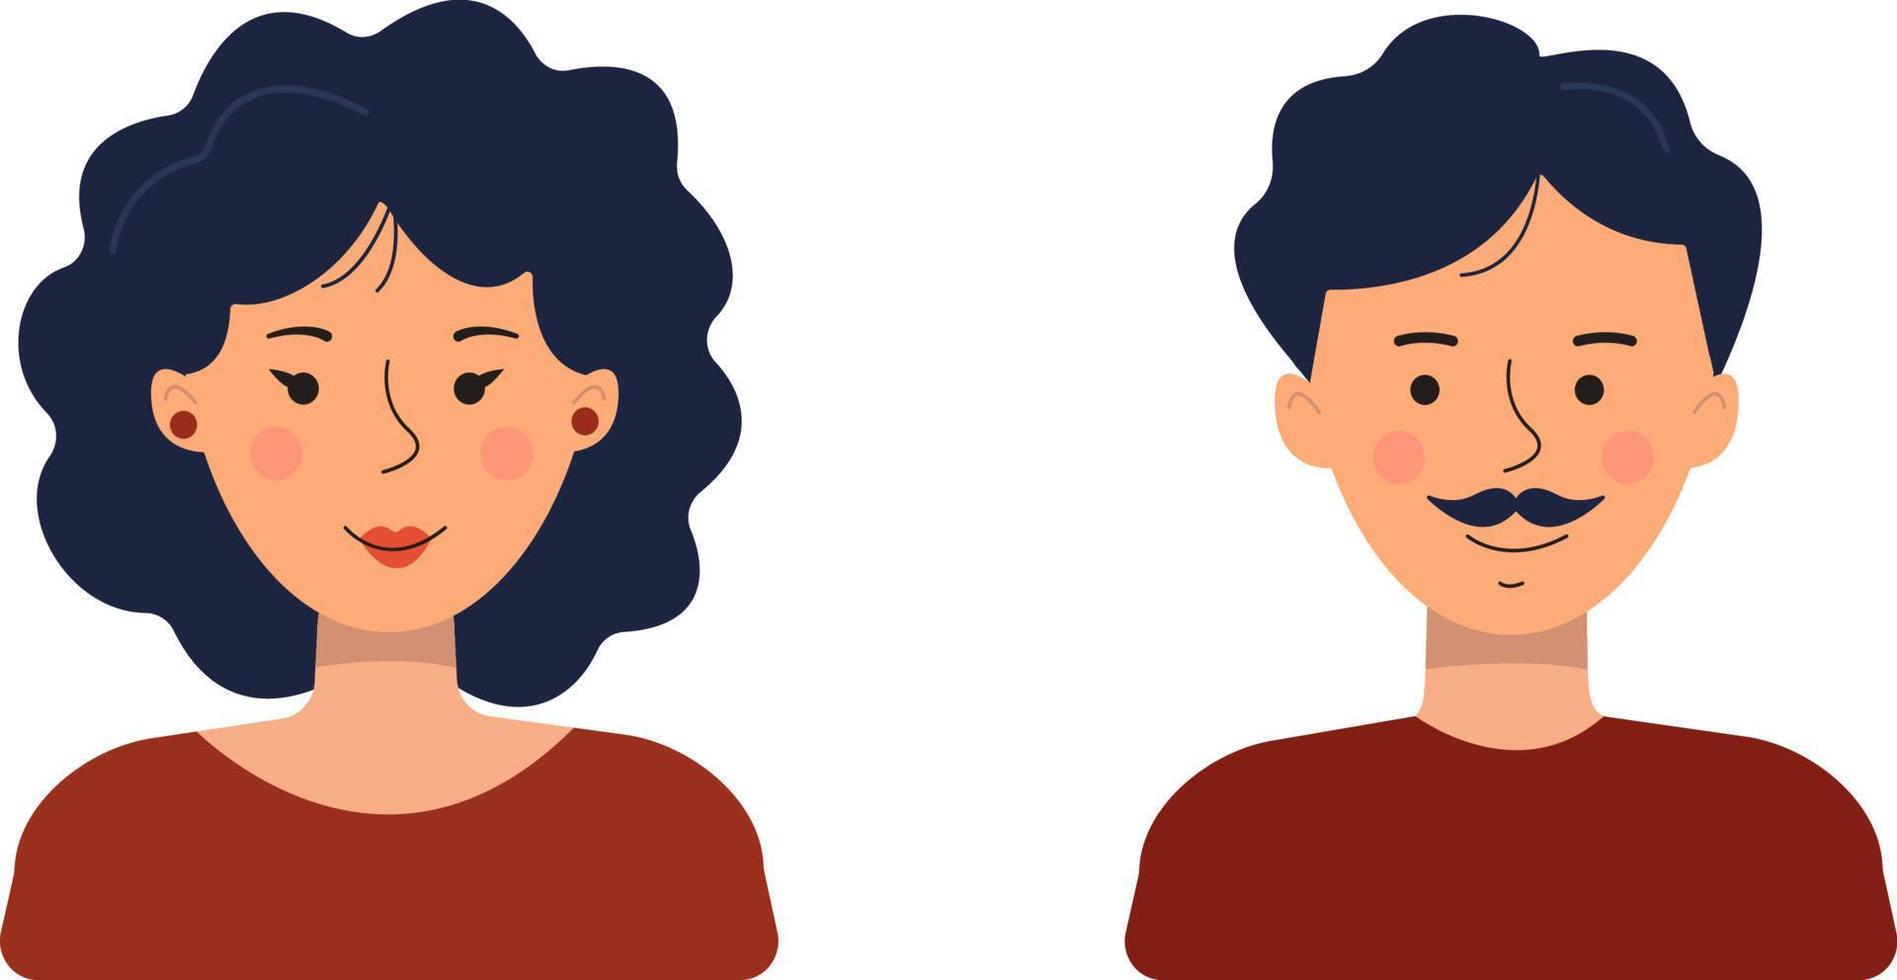 Avatare von Menschen in einem flachen Stil. Vektorillustration eines Mannes und einer Frau, die auf einem weißen Hintergrund isoliert sind. vektor